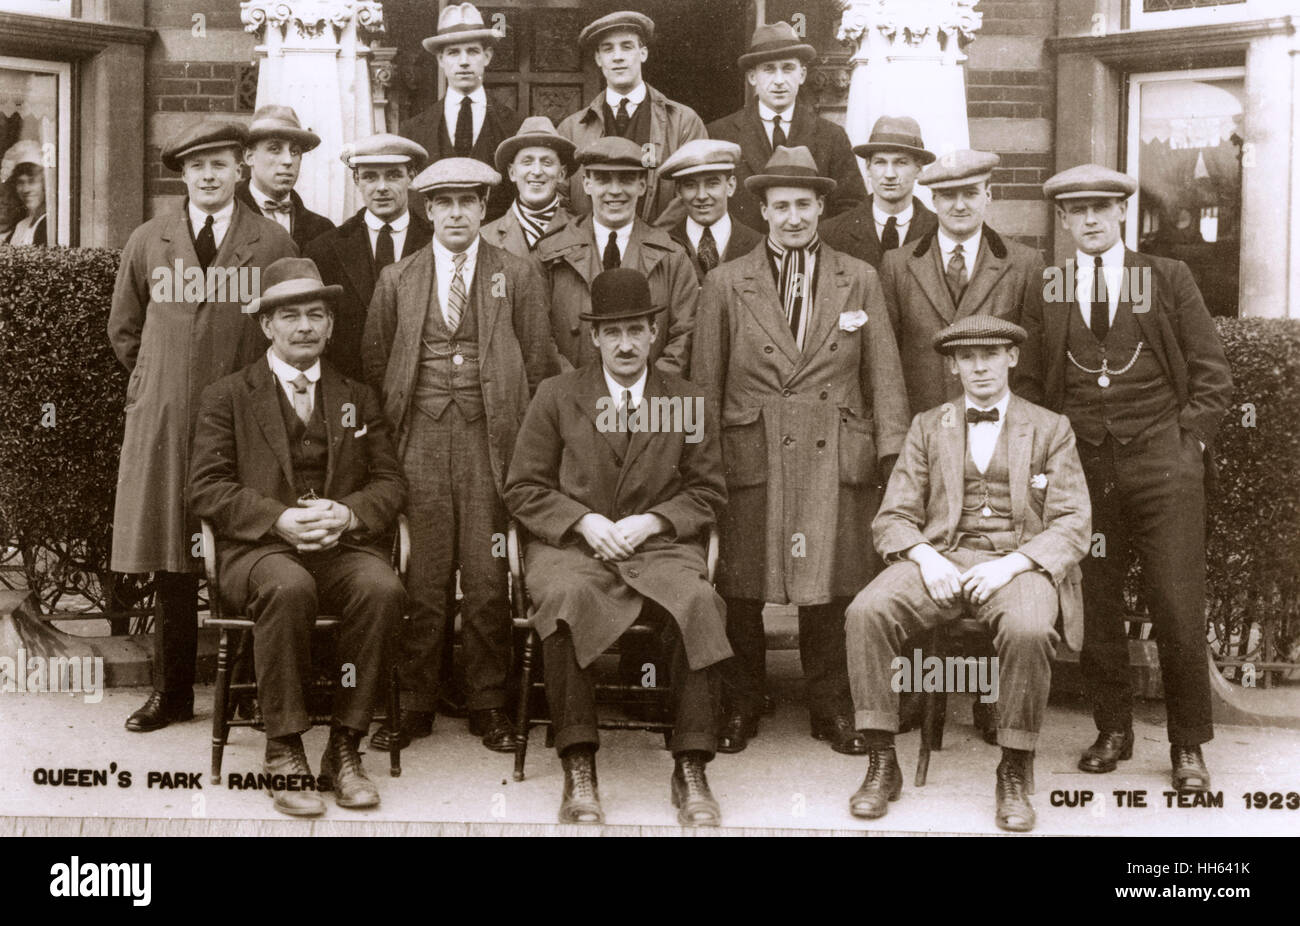 Queens Park Rangers FC L'équipe de football et de la gestion, de l'équipe de coupe 1923, posant en costumes et manteaux à l'extérieur d'une maison. Banque D'Images